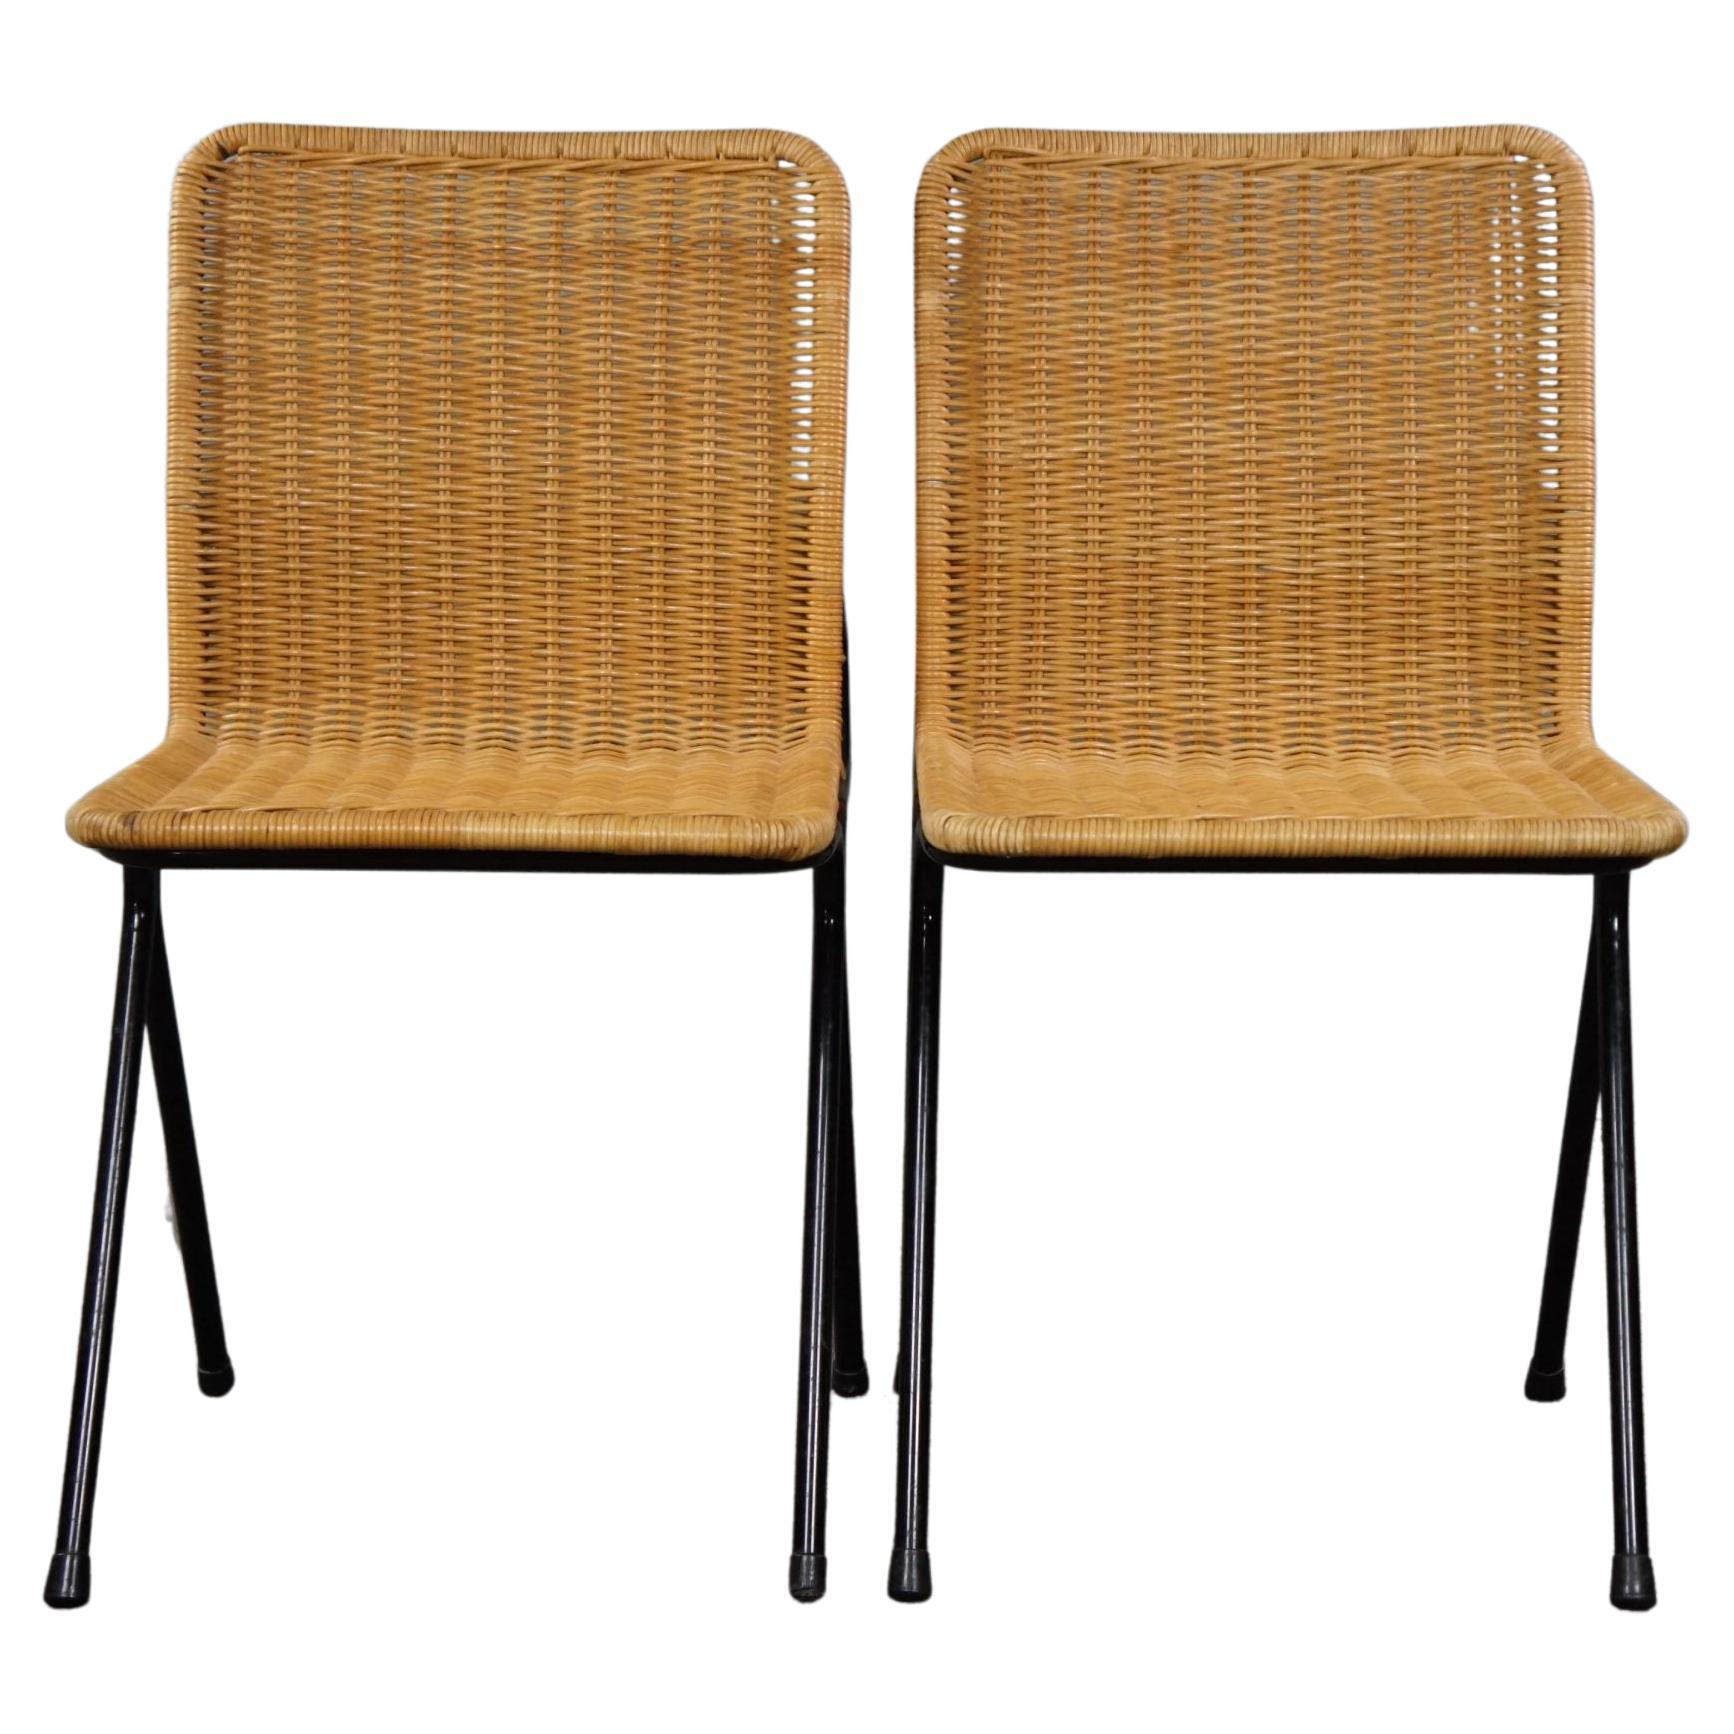 Satz von zwei Vintage-Rattan-Designstühlen, Dirk van Sliedrecht, 1960er Jahre